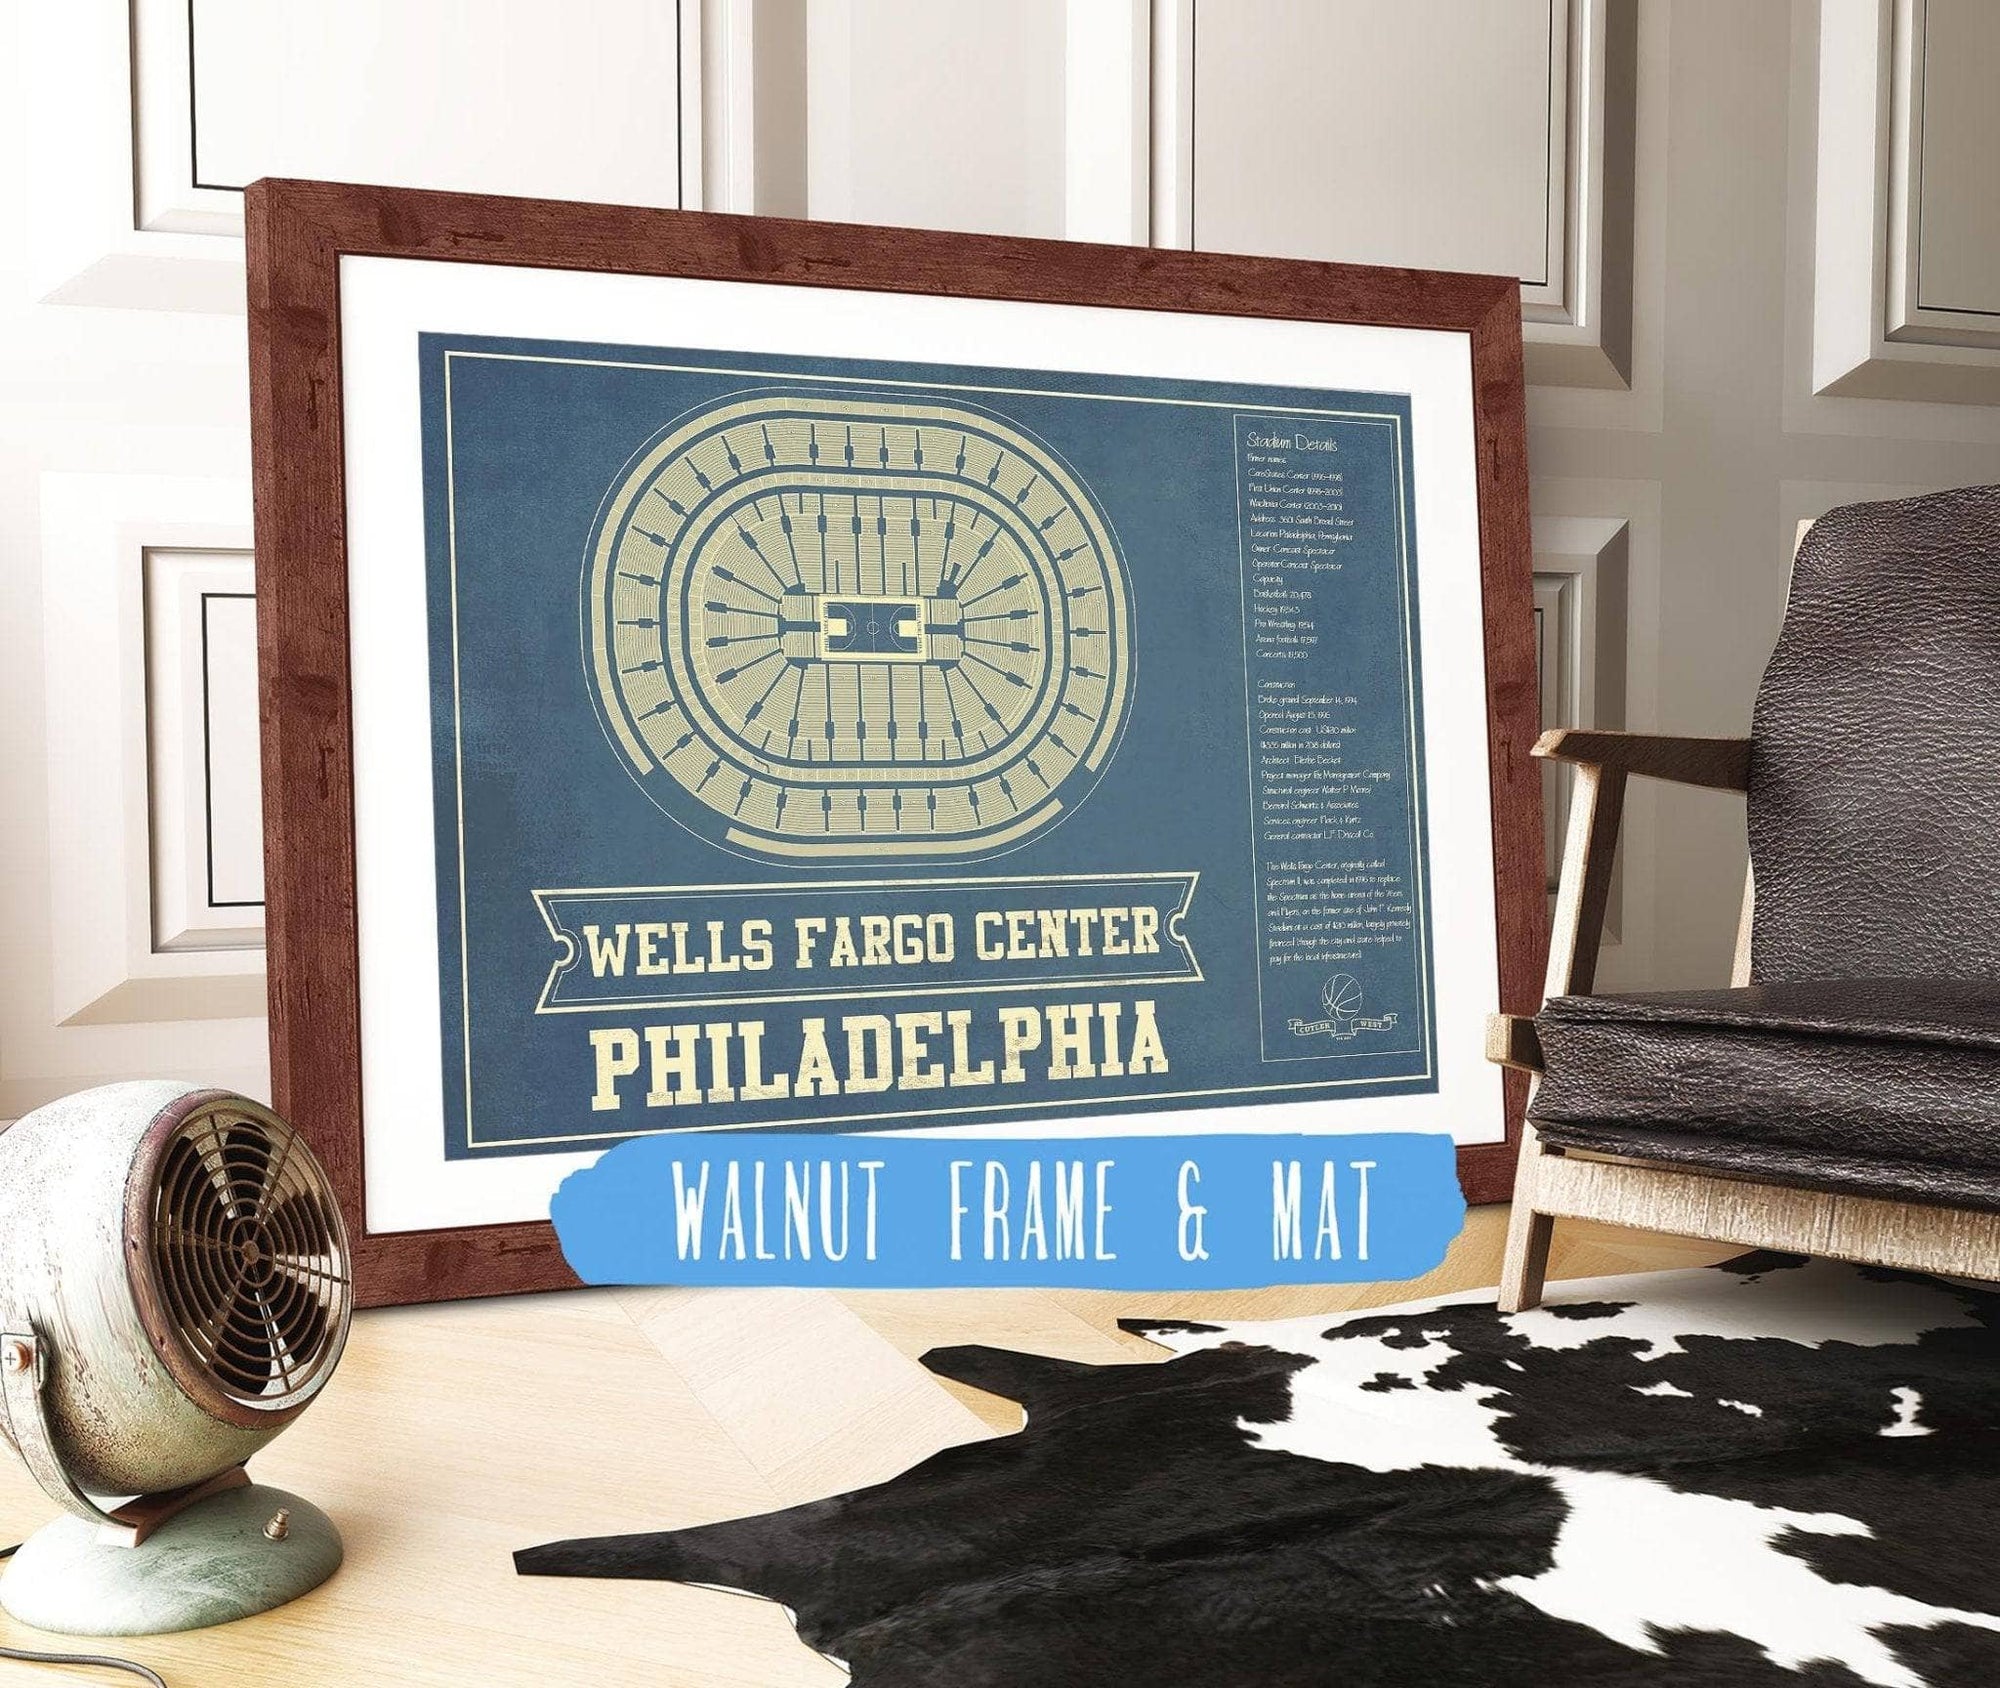 Cutler West Basketball Collection 14" x 11" / Walnut Frame Mat Philadelphia 76ers Wells Fargo Center Vintage Basketball Blueprint NBA Print 933350172_77359